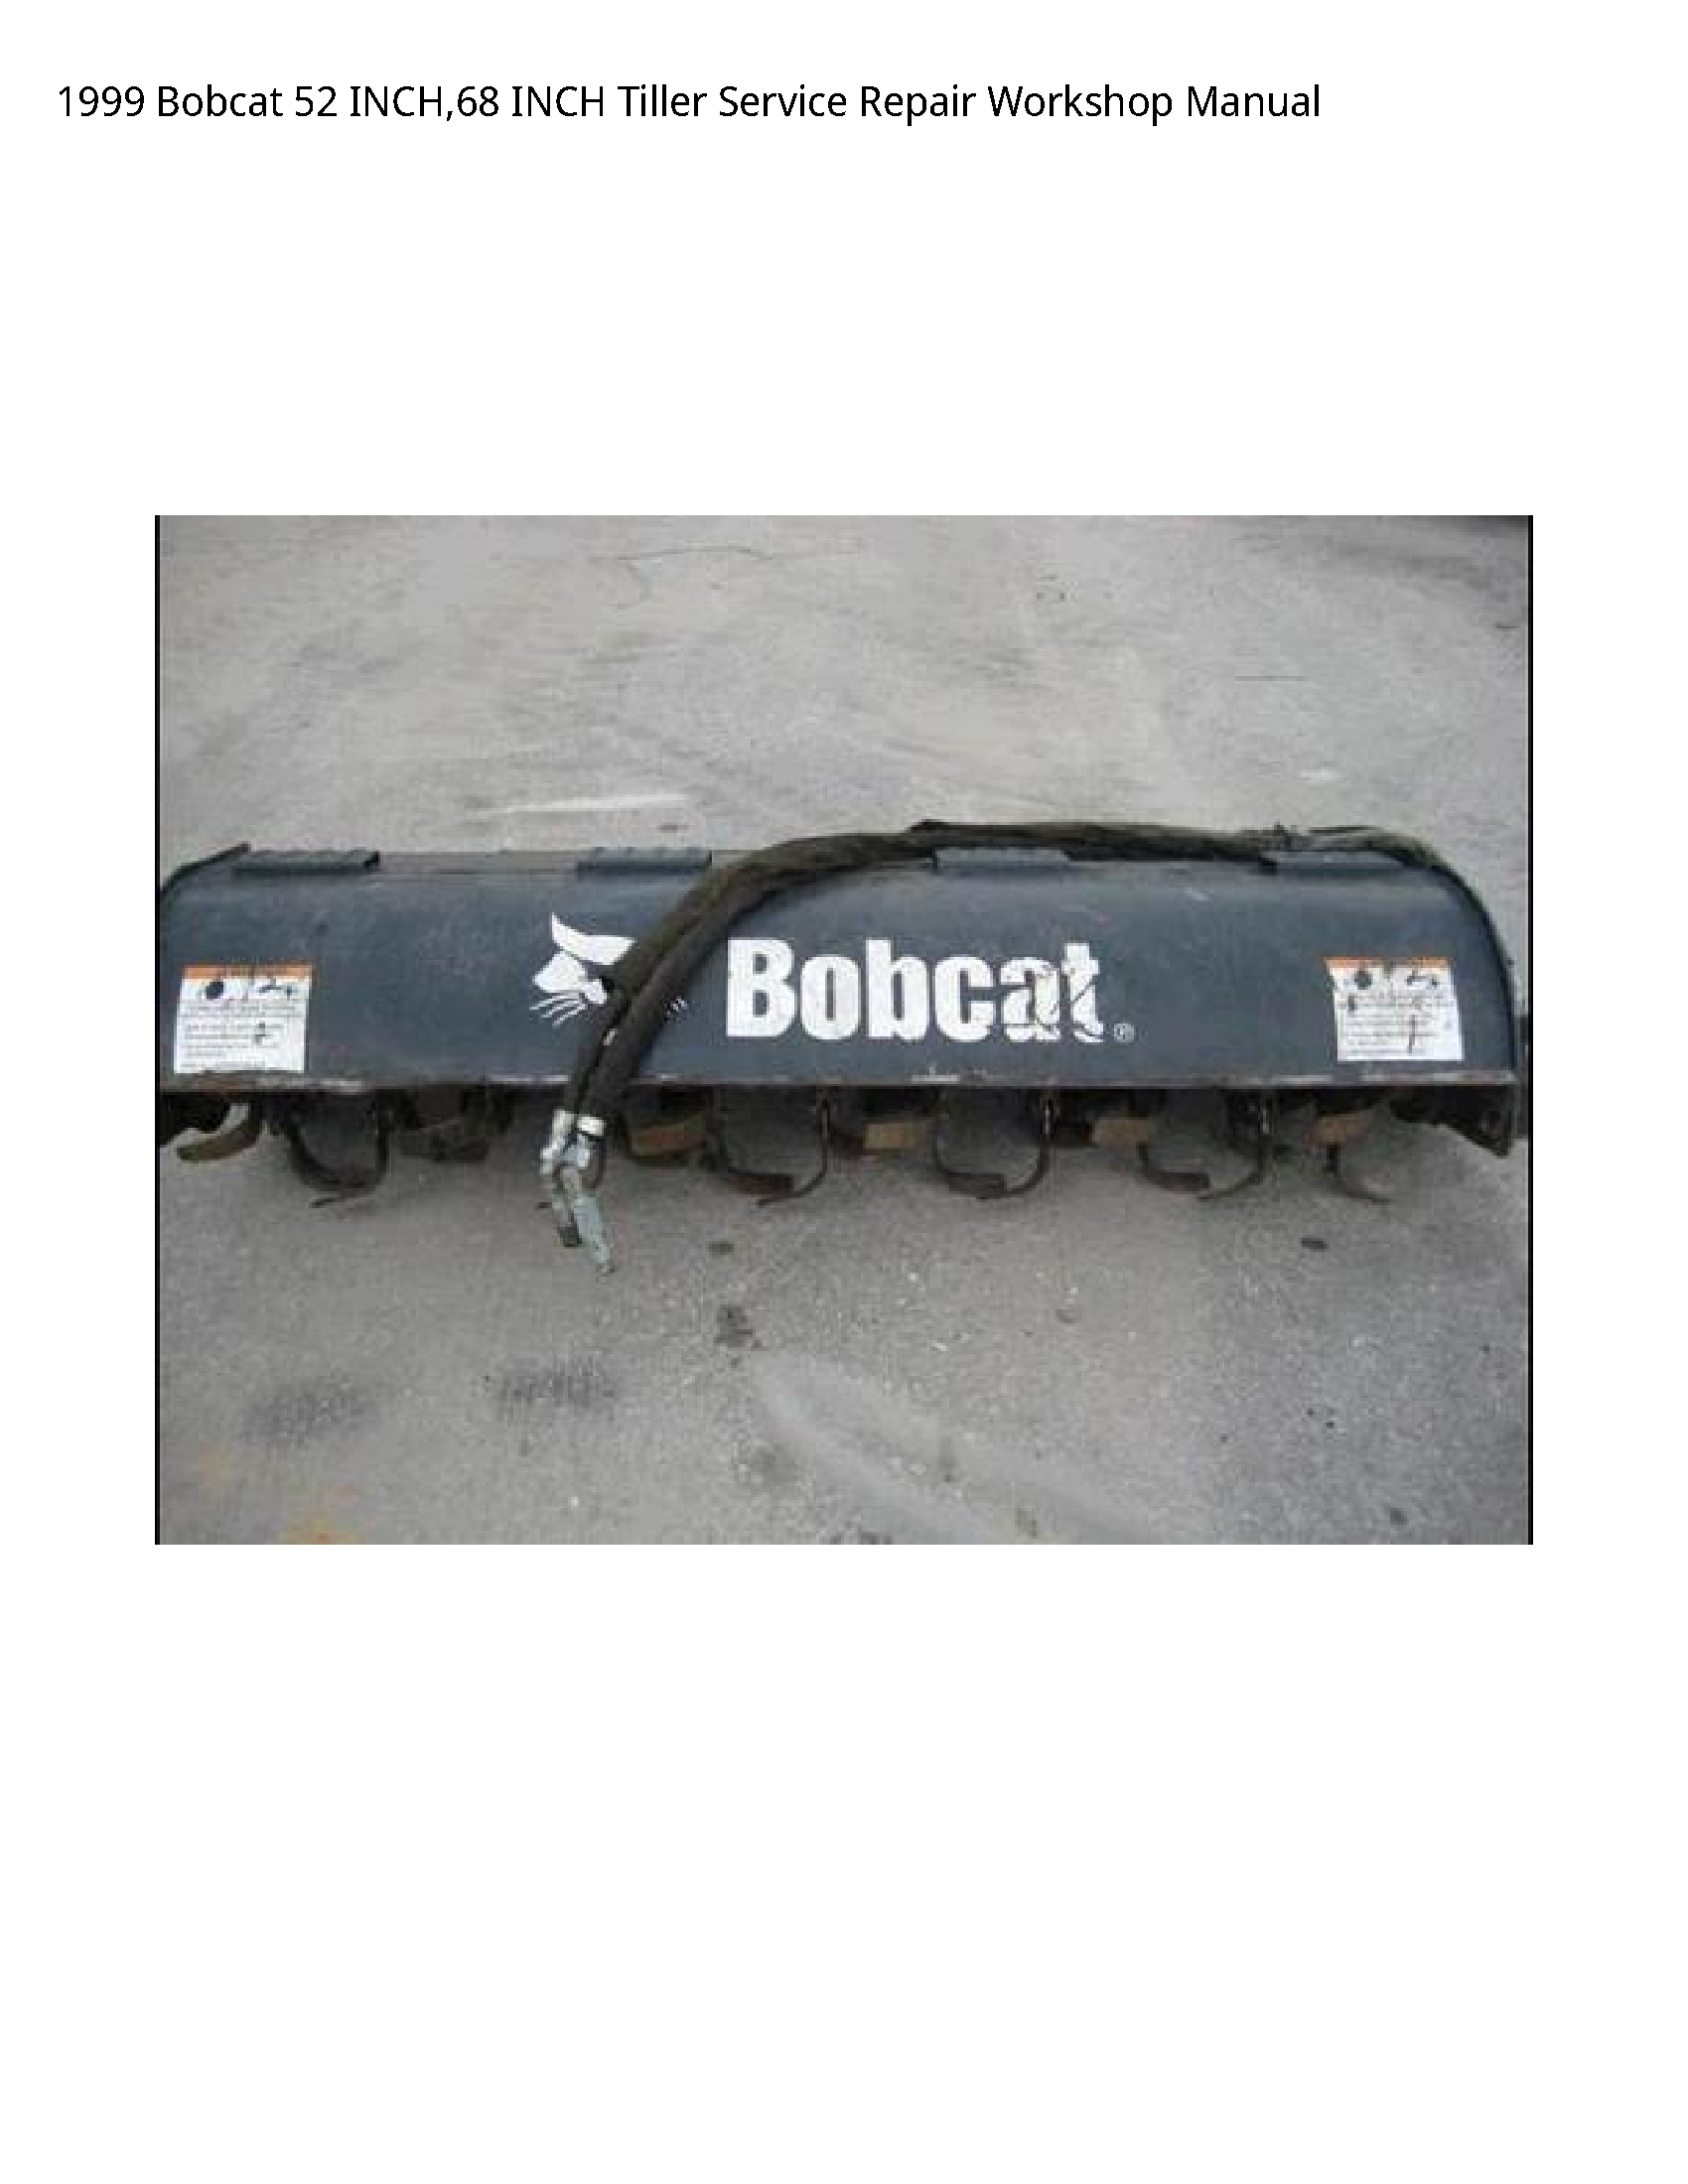 Bobcat 52 INCH Tiller manual